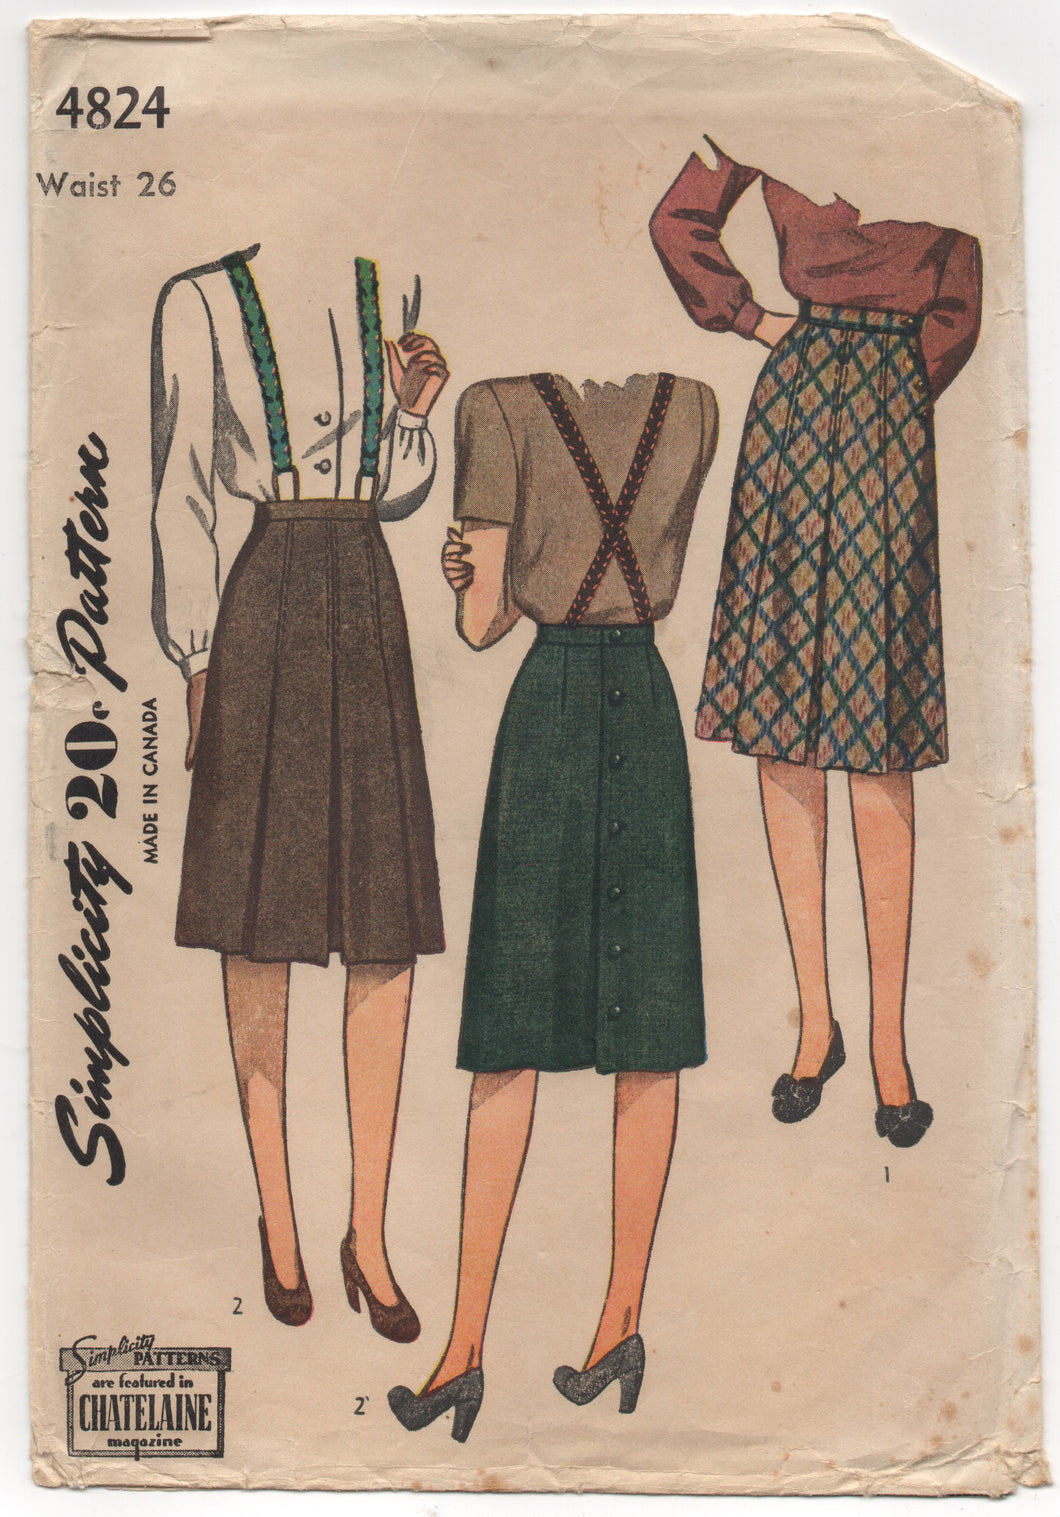 1940's Simplicity Box-Pleated Skirt - Waist 26